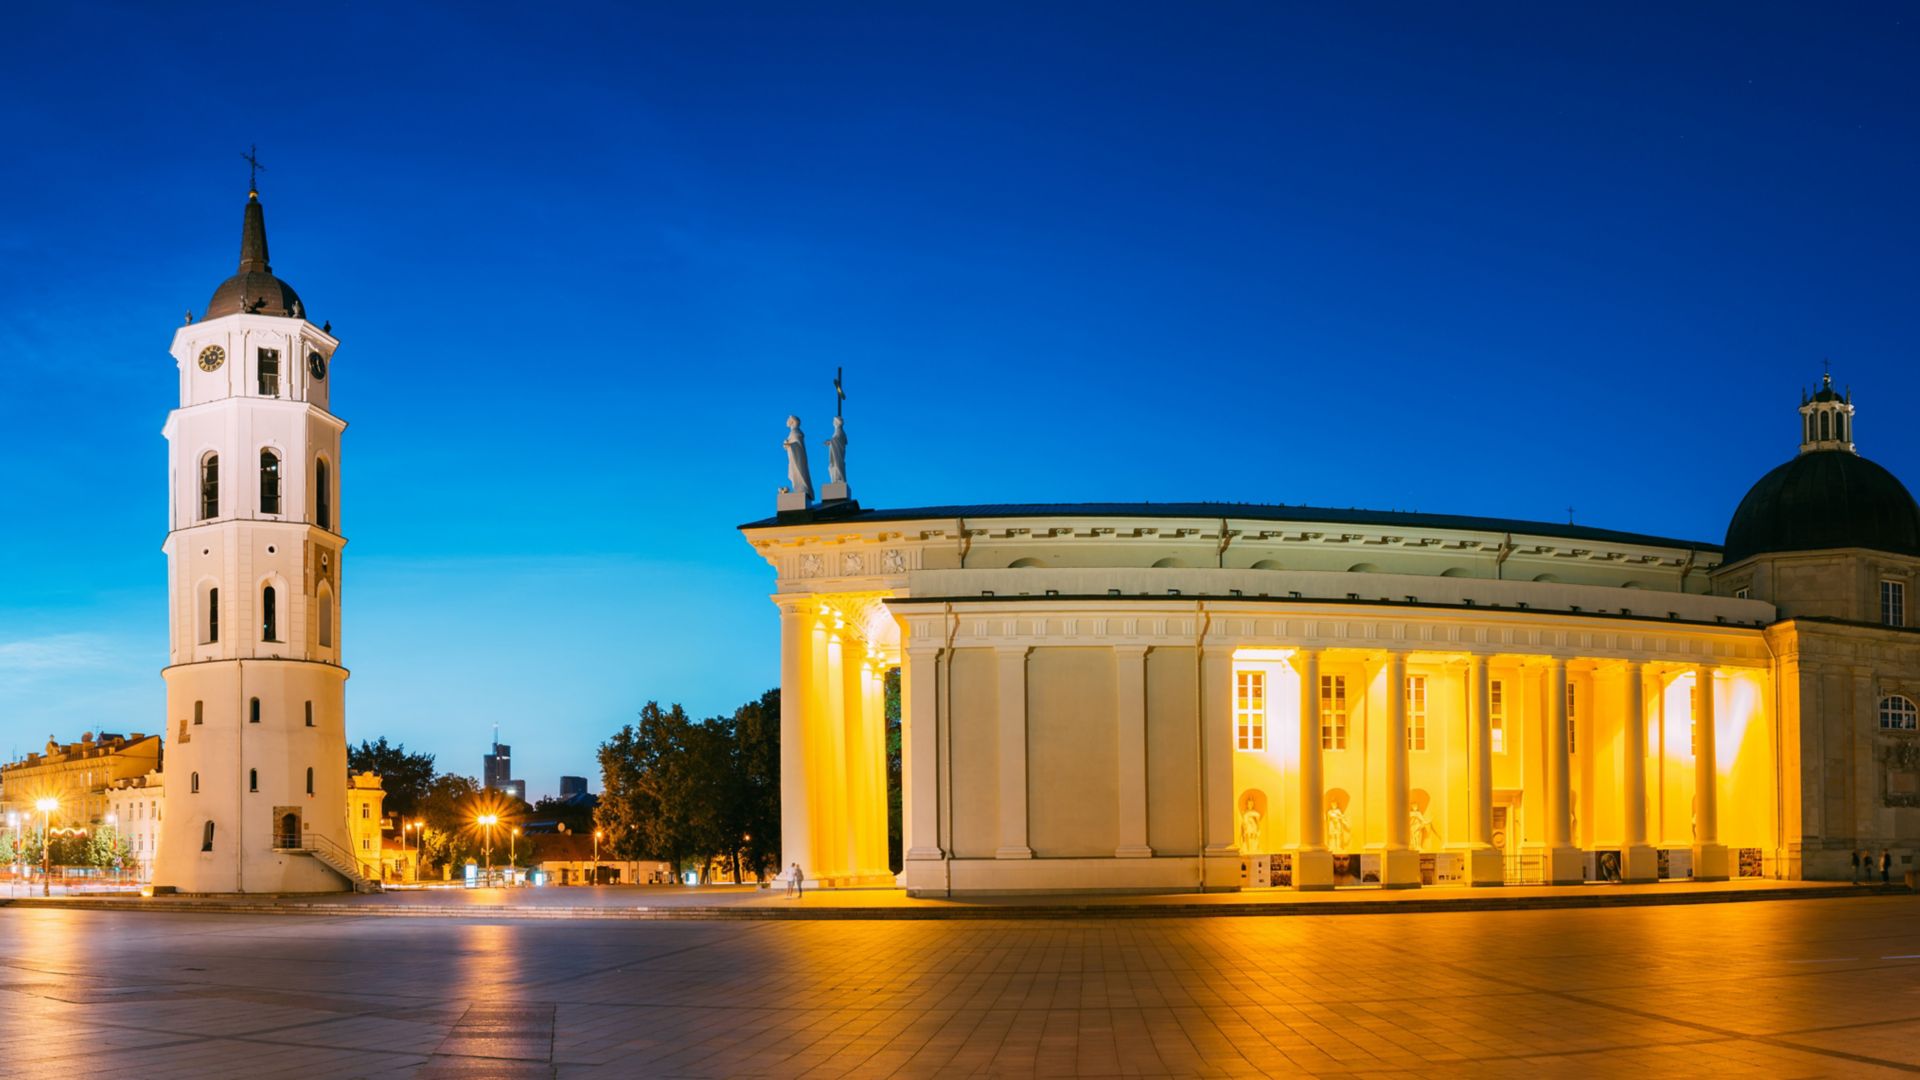 Panorama nocturne du beffroi du clocher, de la basilique-cathédrale Saint-Stanislas et Saint-Vladislas et du palais des Grands-ducs de Lituanie au crépuscule. Vilnius, Lituanie, Europe de l’Est.